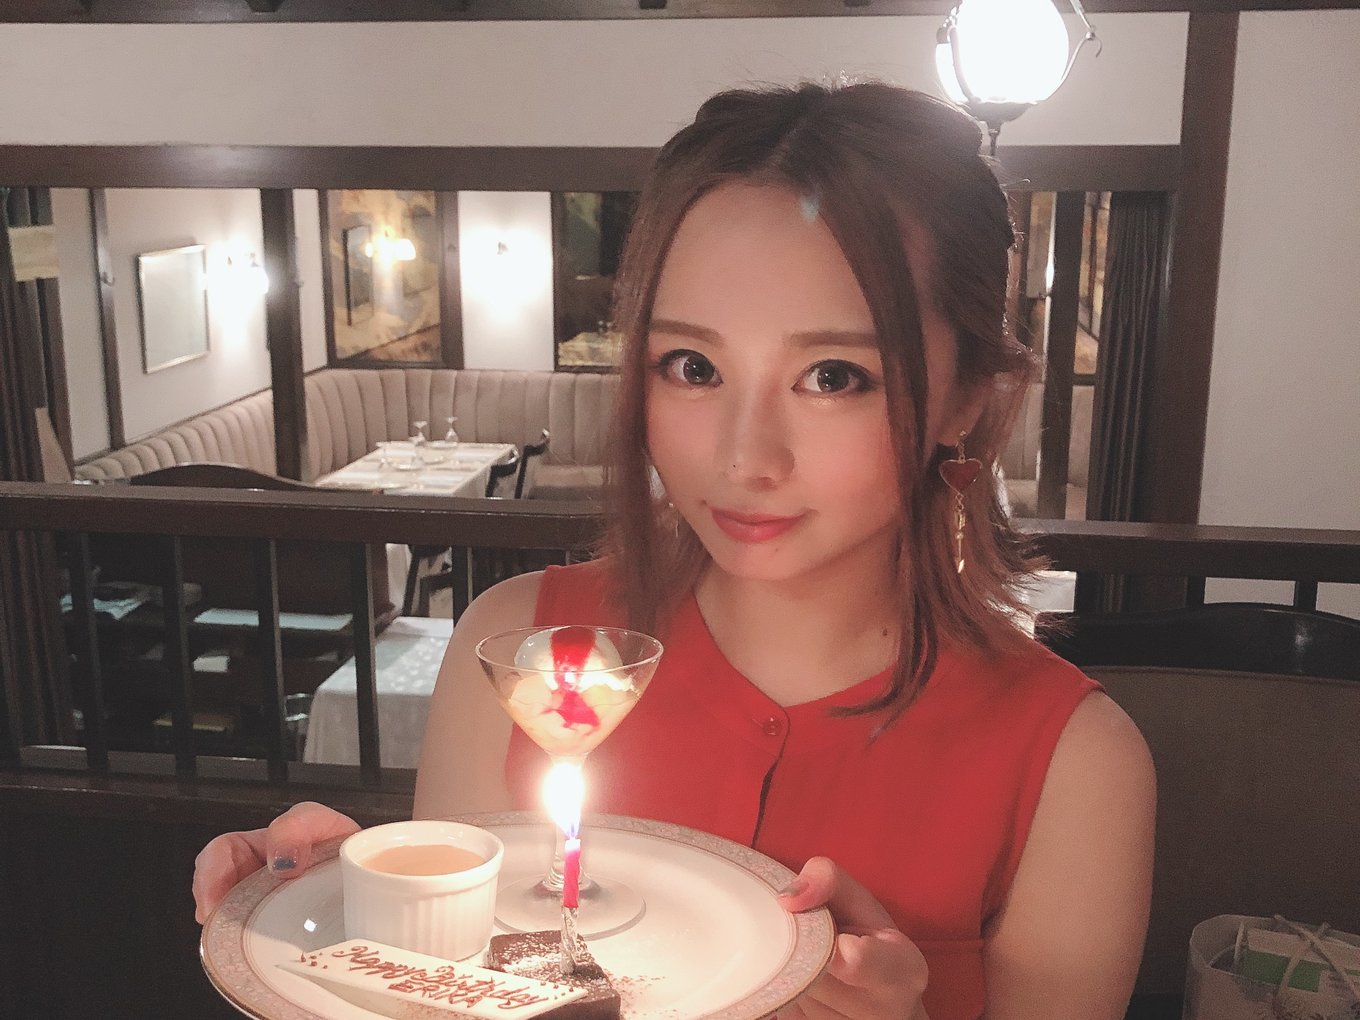 東京都内で記念日ディナーデート完全版 彼女が喜ぶおすすめレストラン15選 Playlife プレイライフ